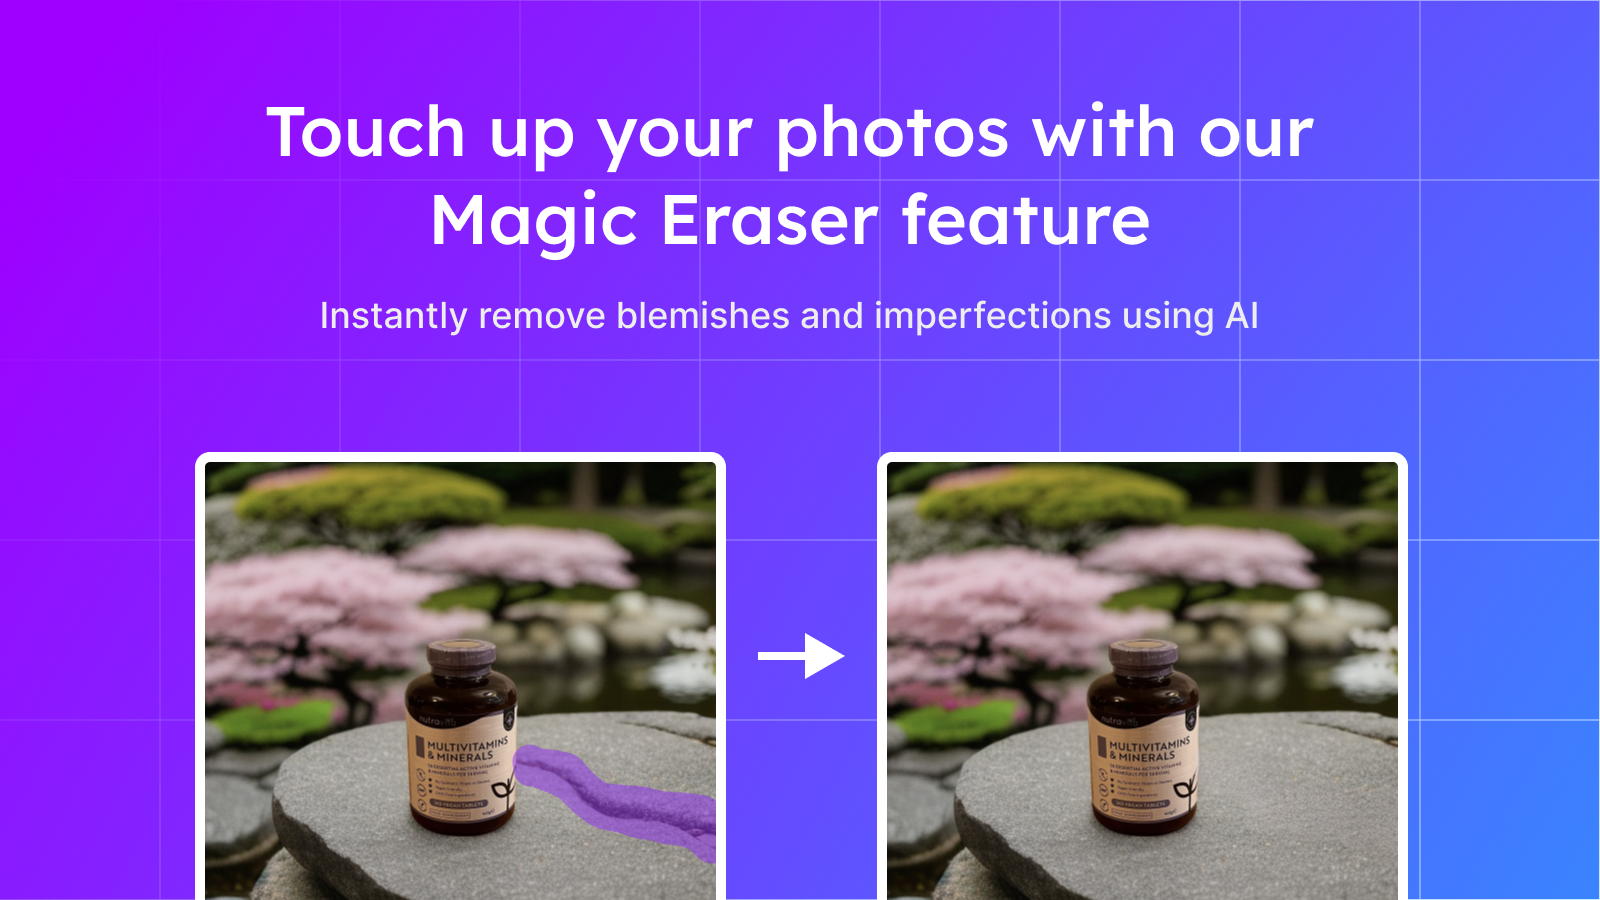 Rätta till dina foton med vår Magic Eraser-funktion